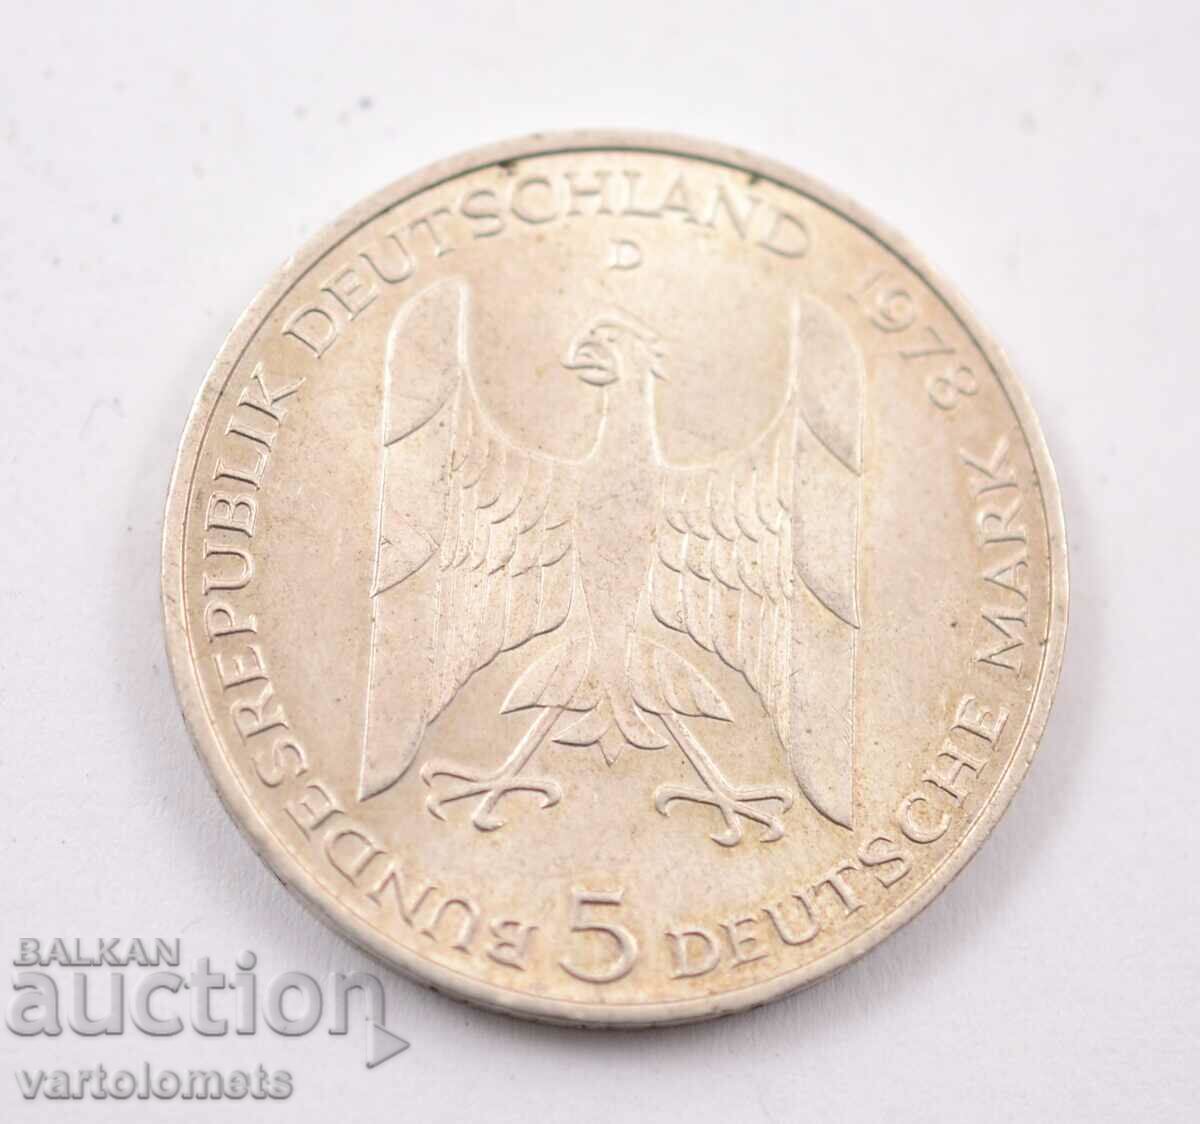 5 γραμματόσημα 1978 - Γερμανία FRG, ασήμι 625/ 11,2 g.